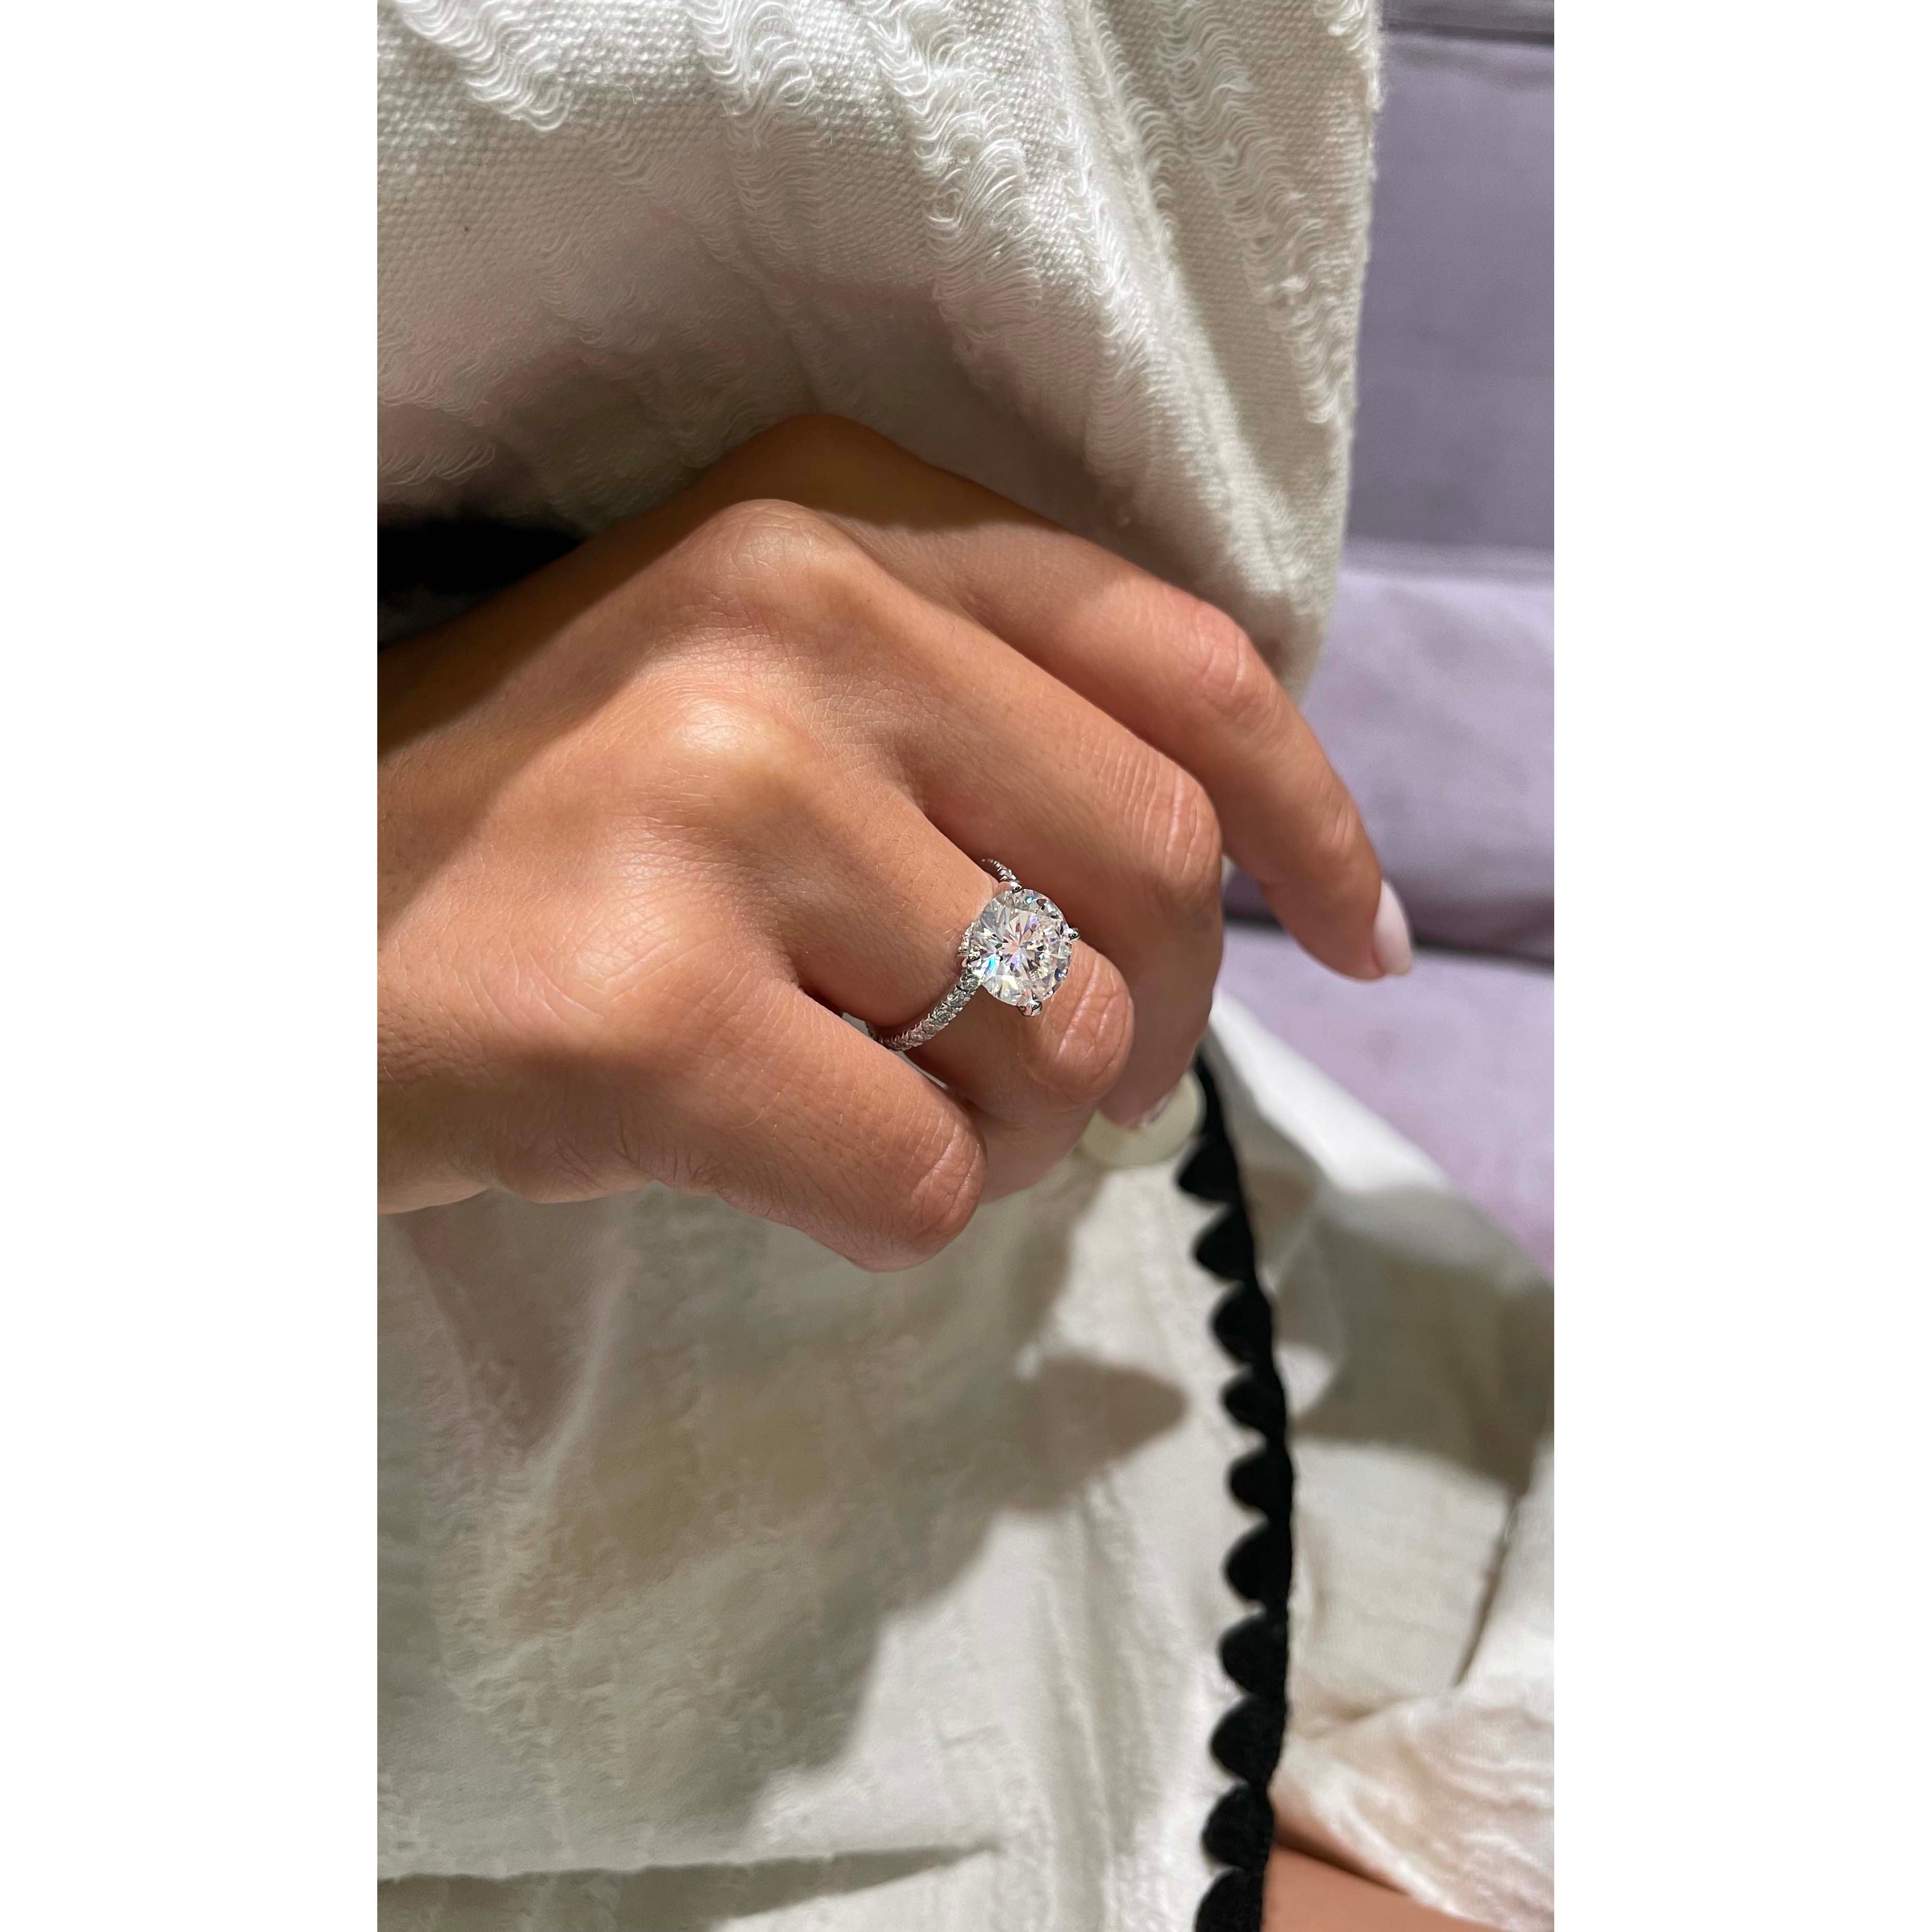 Eleanor Moissanite & Diamonds Ring -14K White Gold